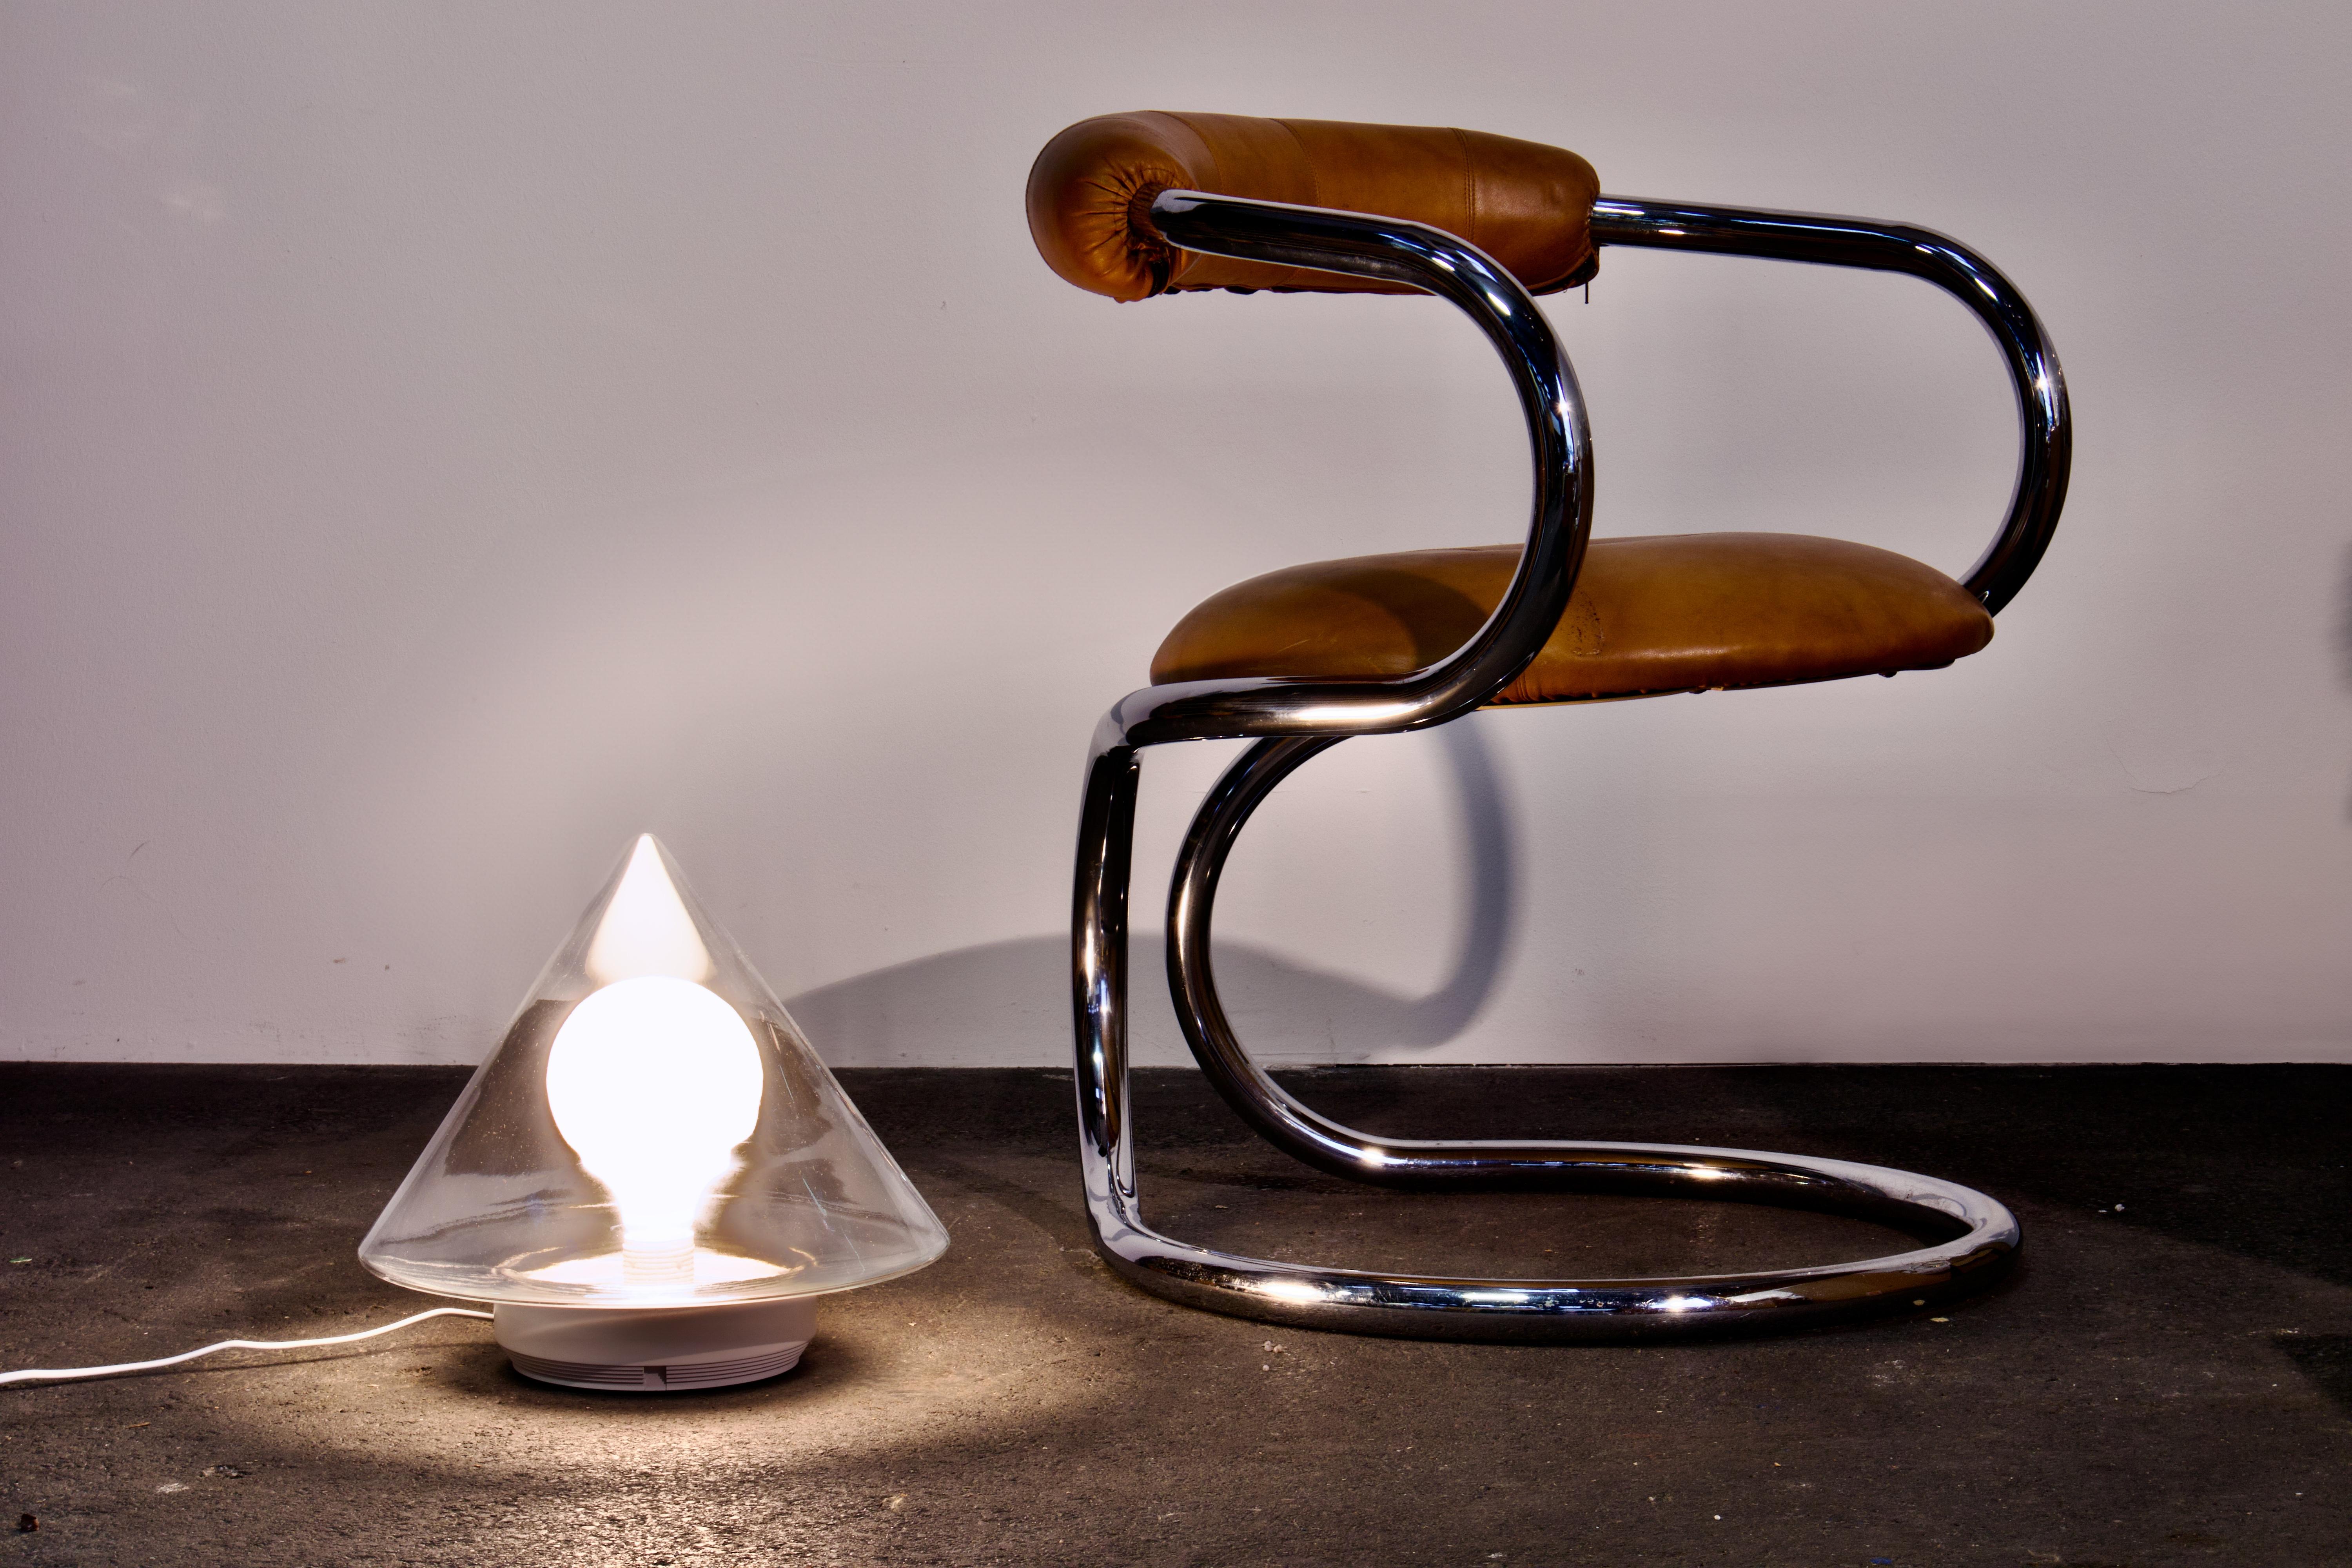 Diese außergewöhnliche und schöne Stehlampe aus deutschem Kunstglas wurde 1979 von Hartmut Engel entworfen und in Berlin (Westdeutschland) von Brendel & Loewig hergestellt.

Die Fotos zeigen die Lampe mit einer neuartigen übergroßen Glühbirne, sie